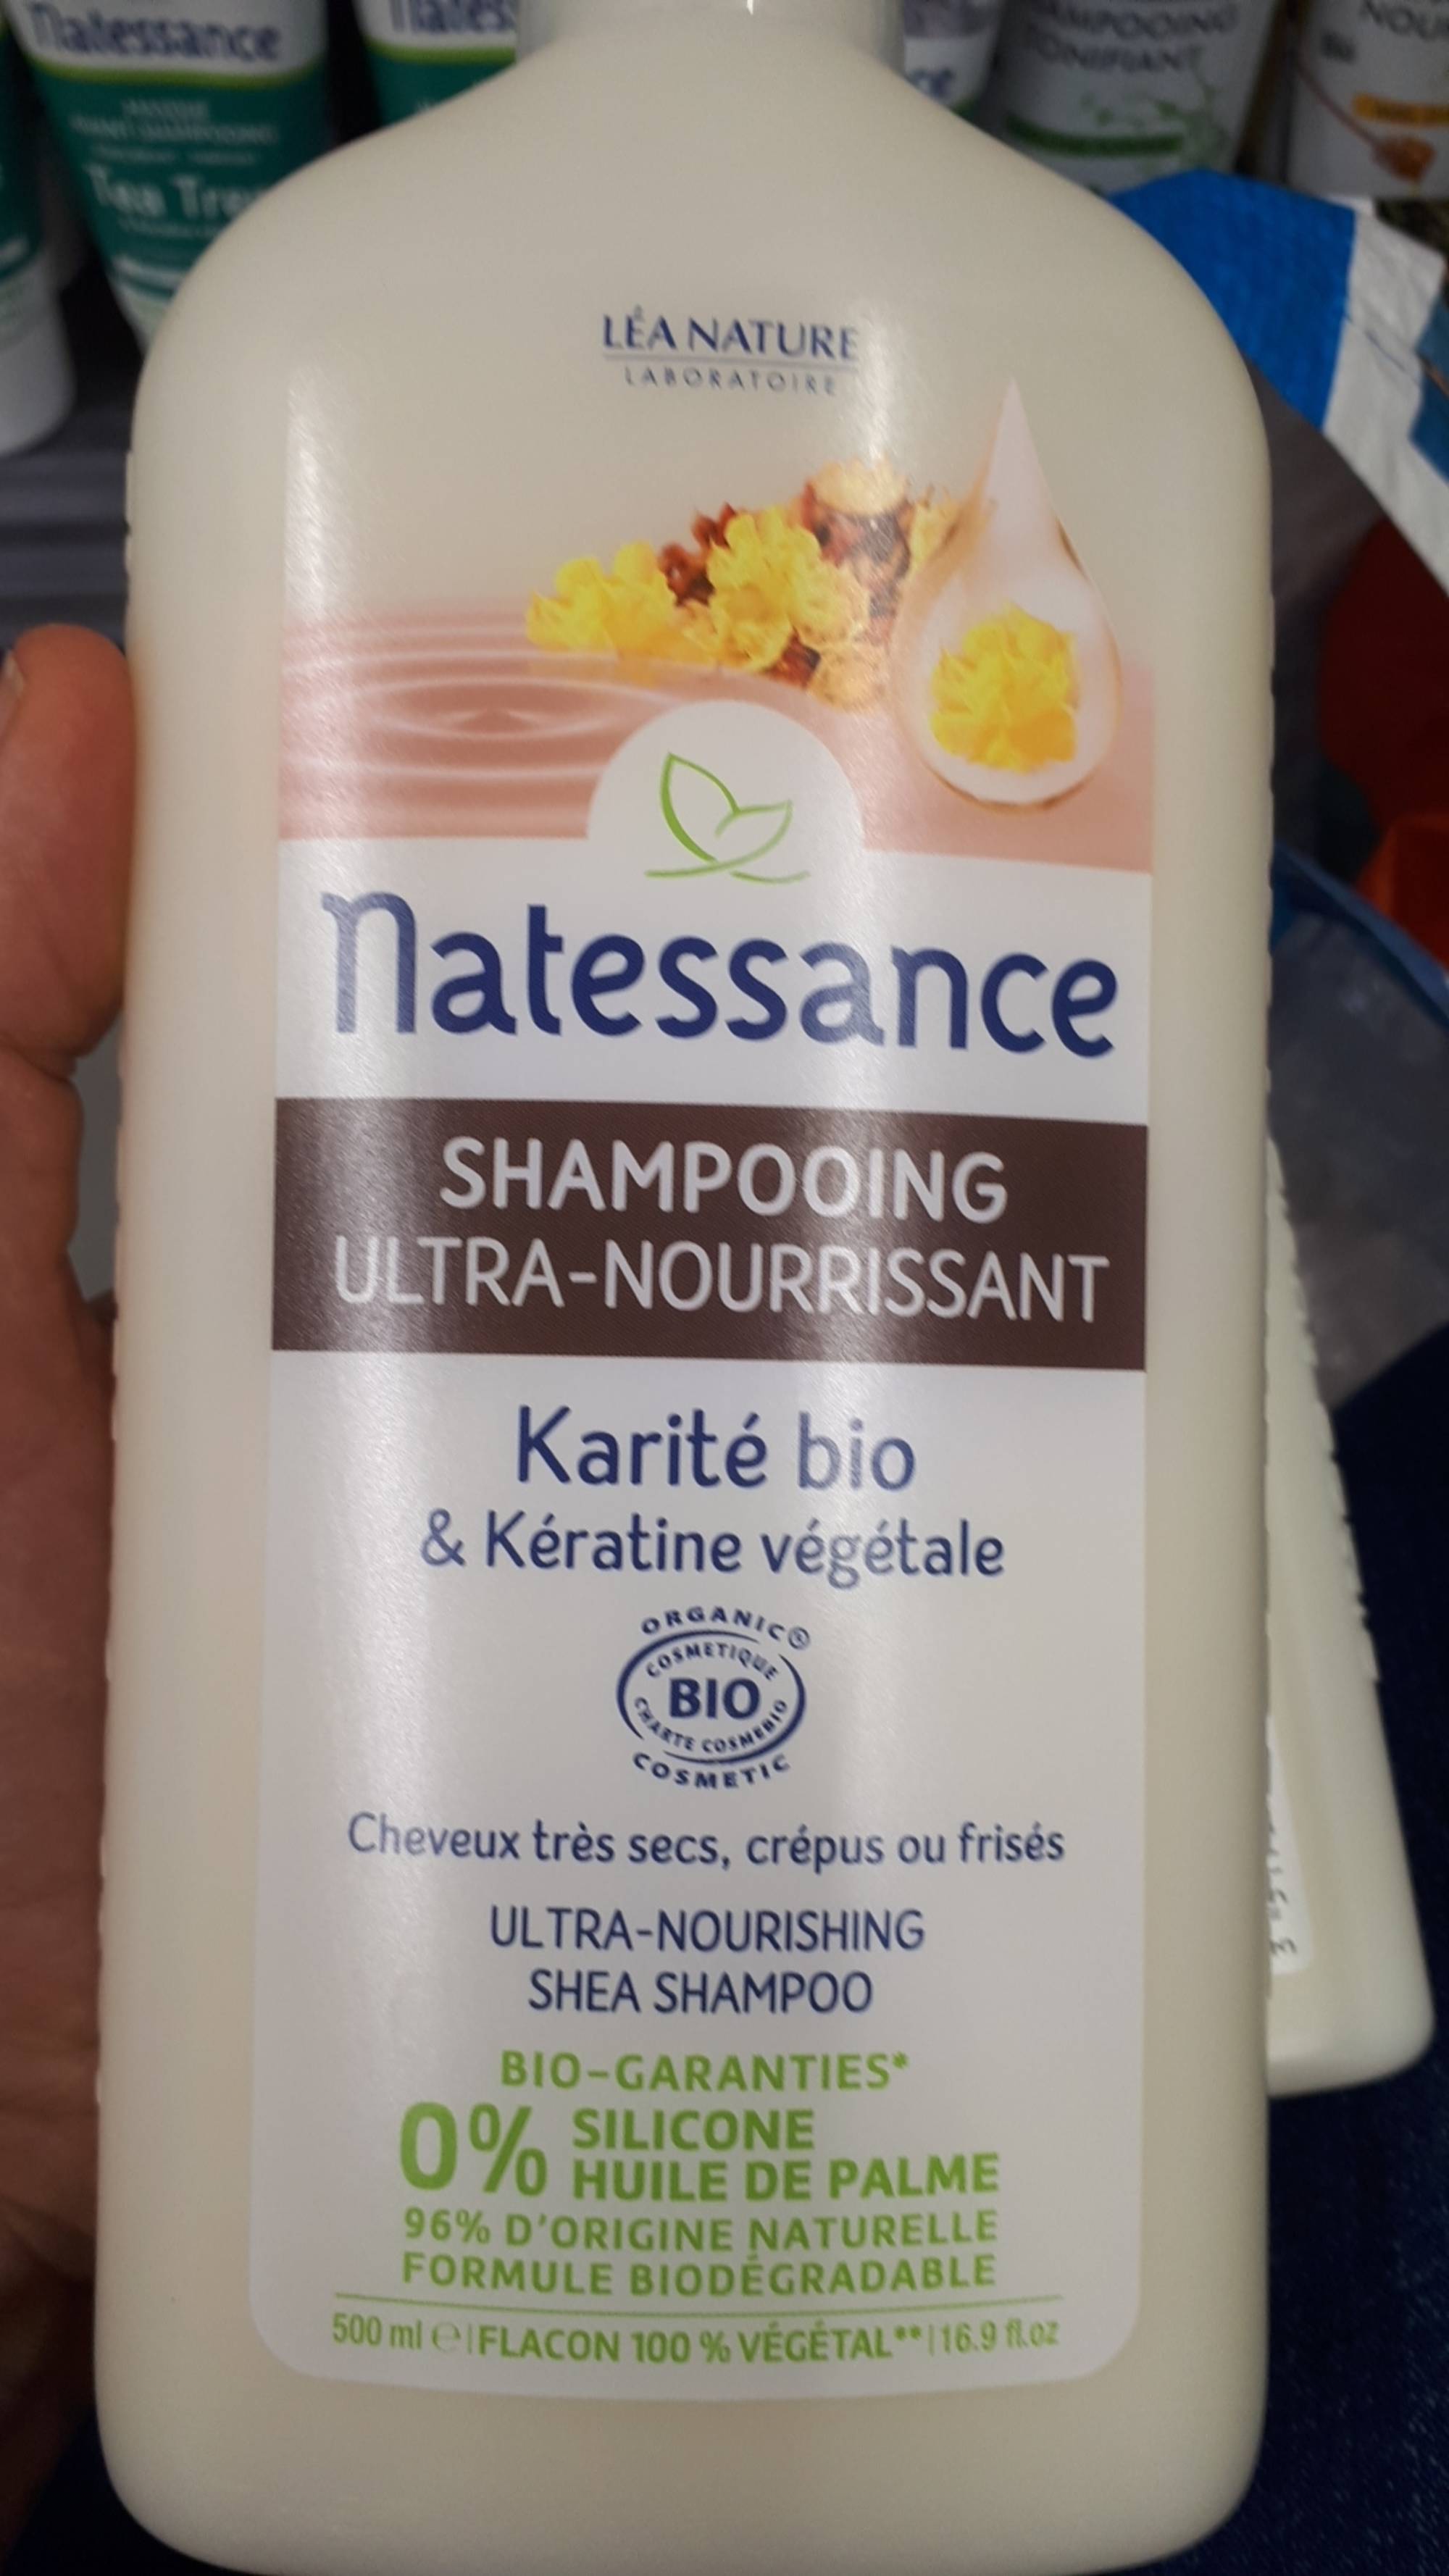 NATESSANCE - Shampooing ultra-nourrissant karité bio